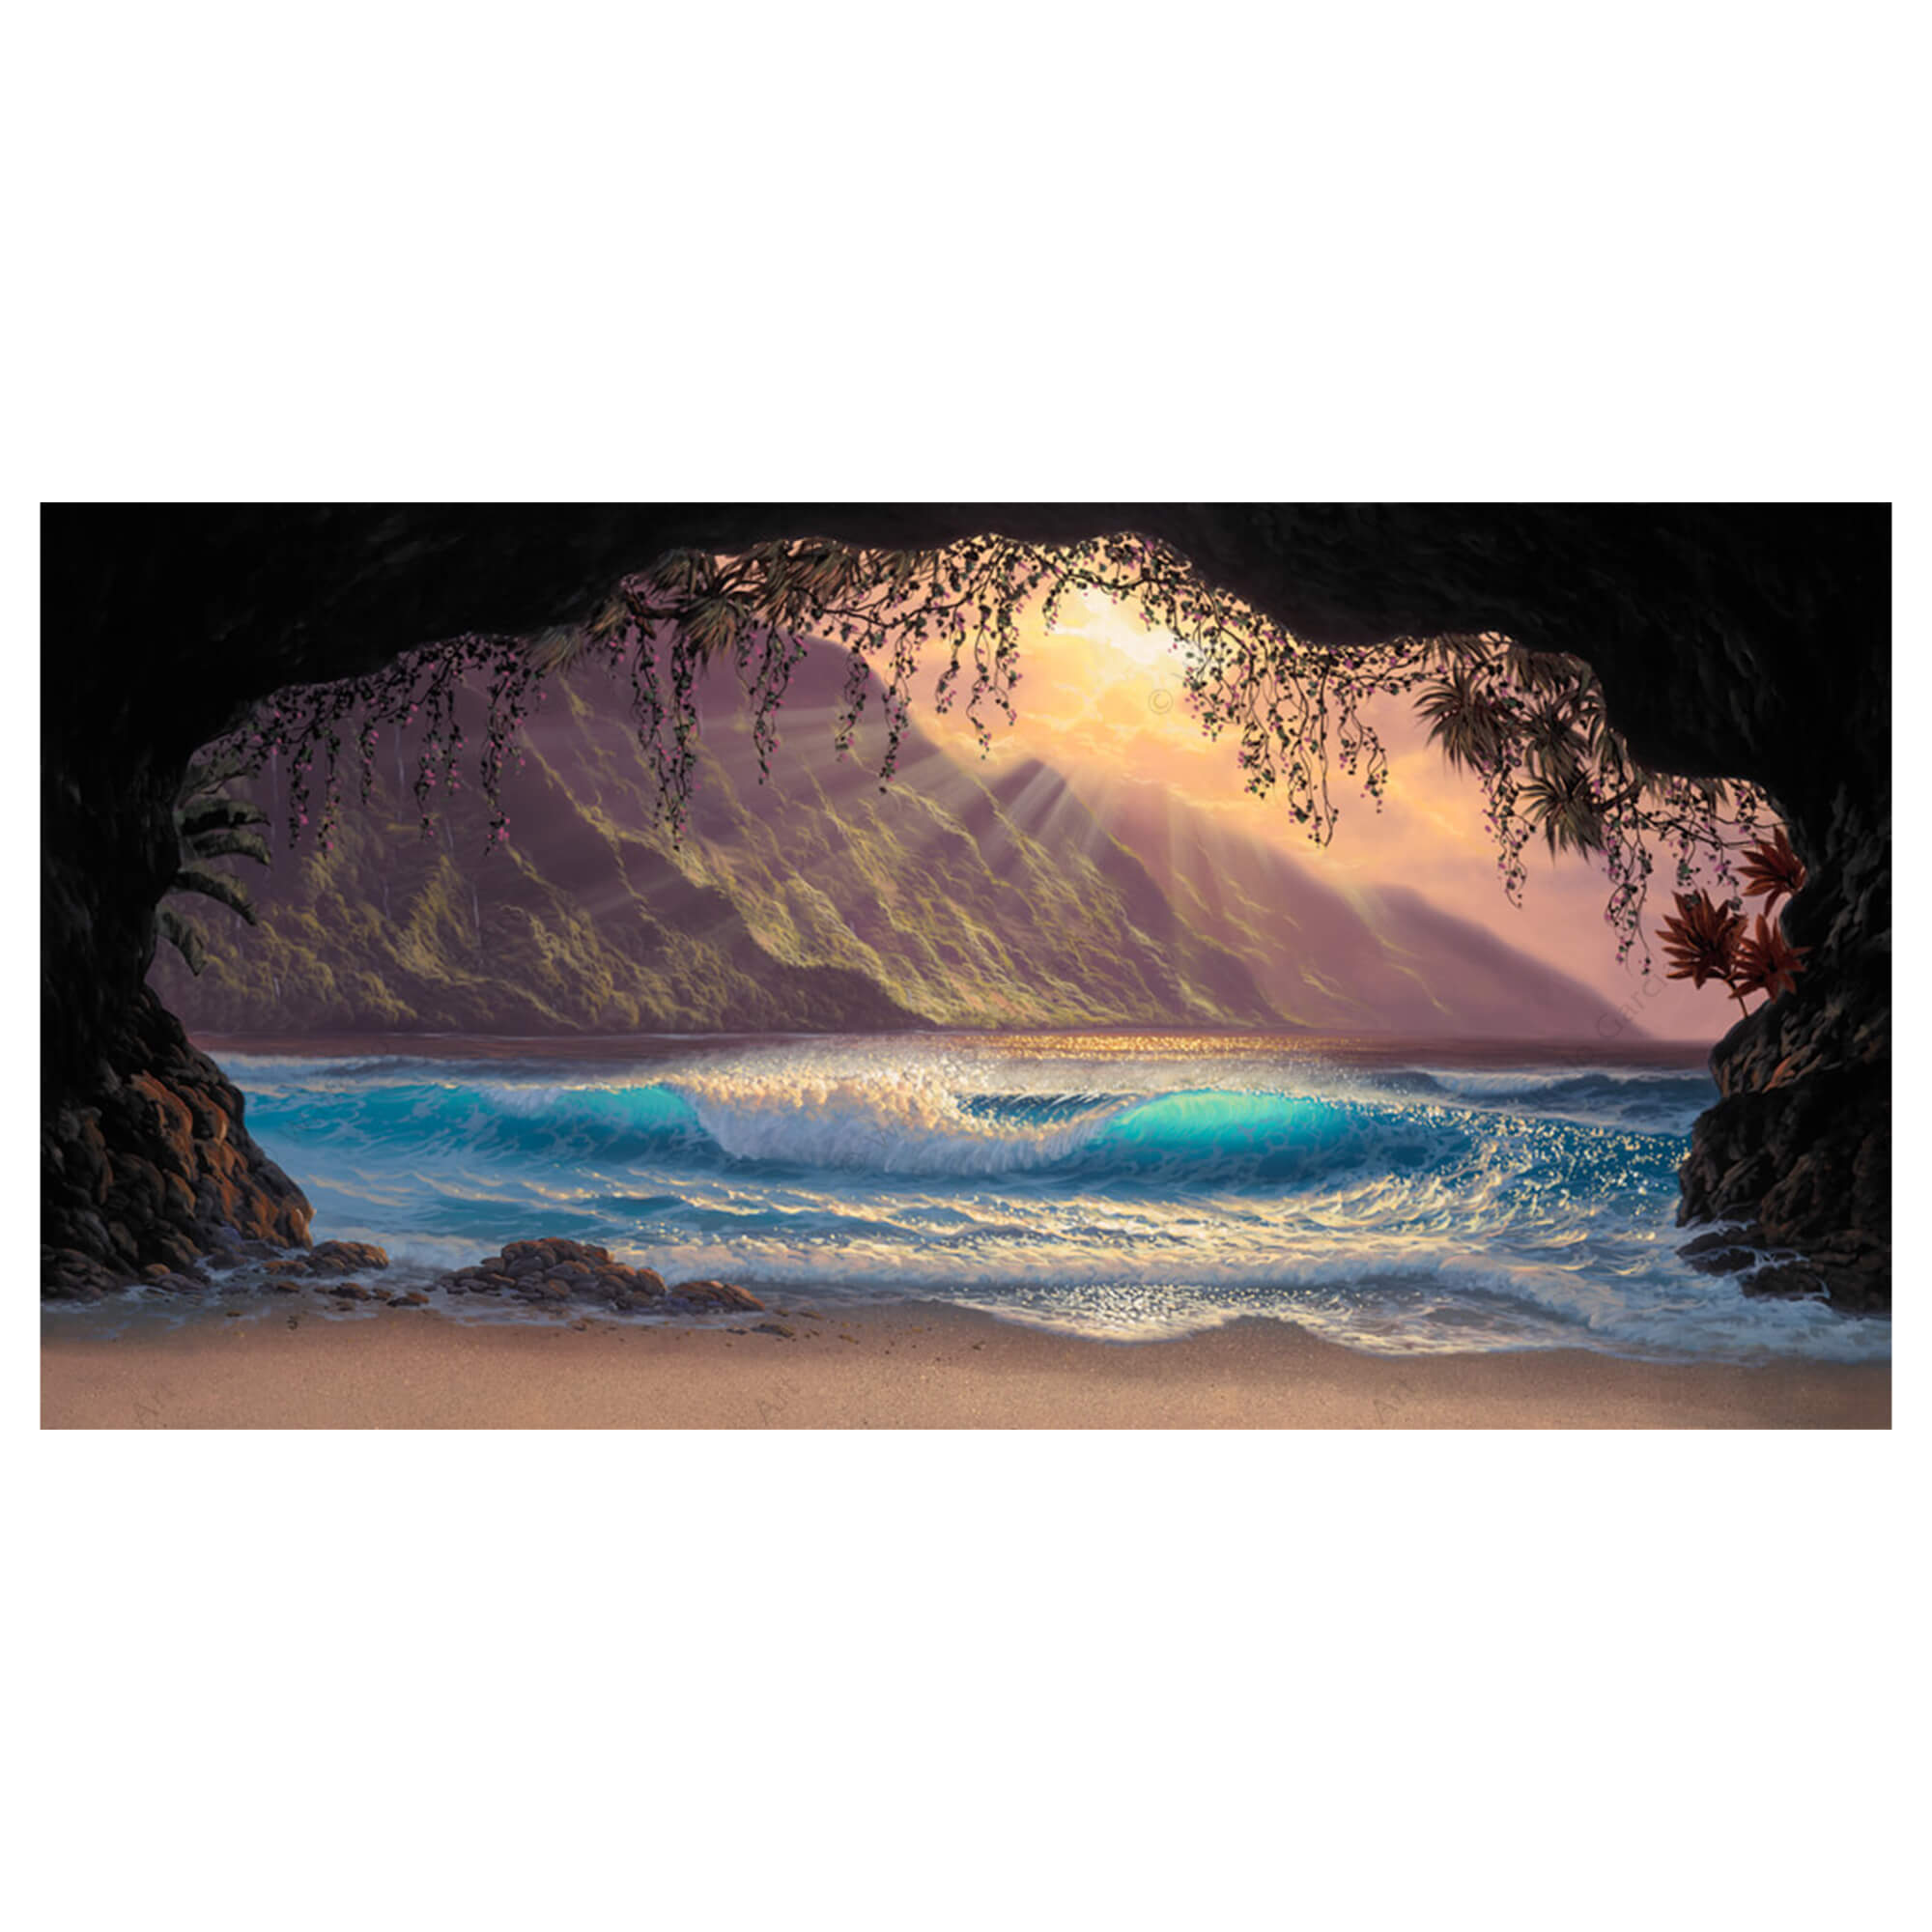 A matted art print of a wave as seen from a cove on a sandy Hawaiian beach by Hawaii artist Walfrido Garcia